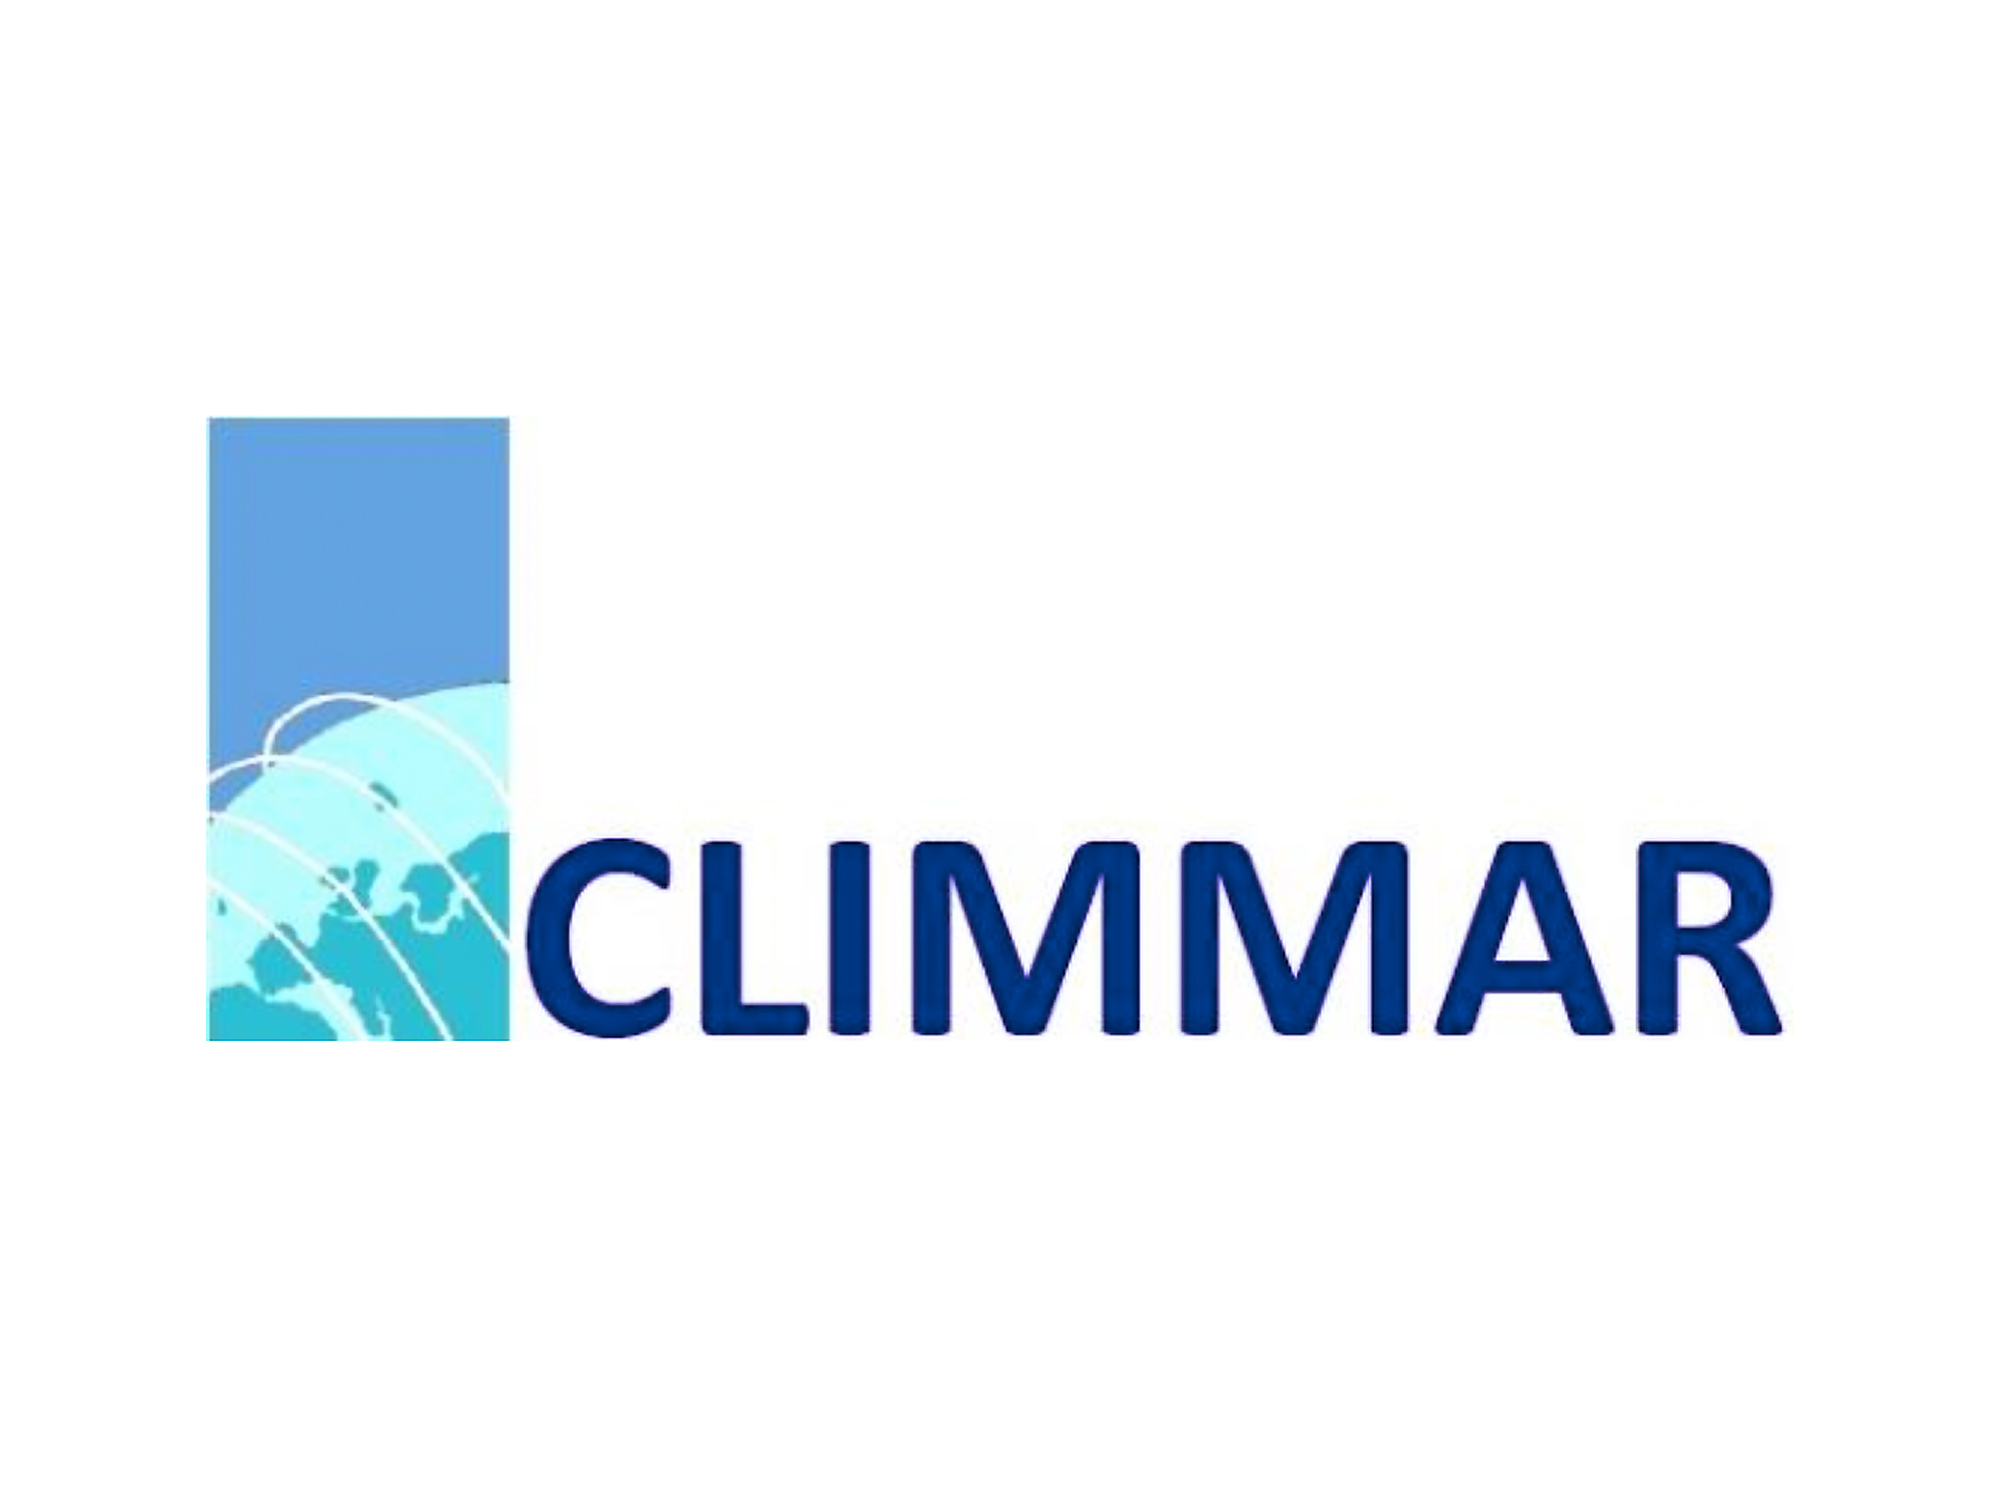 CLIMMAR_Logo|copyright: Climmar